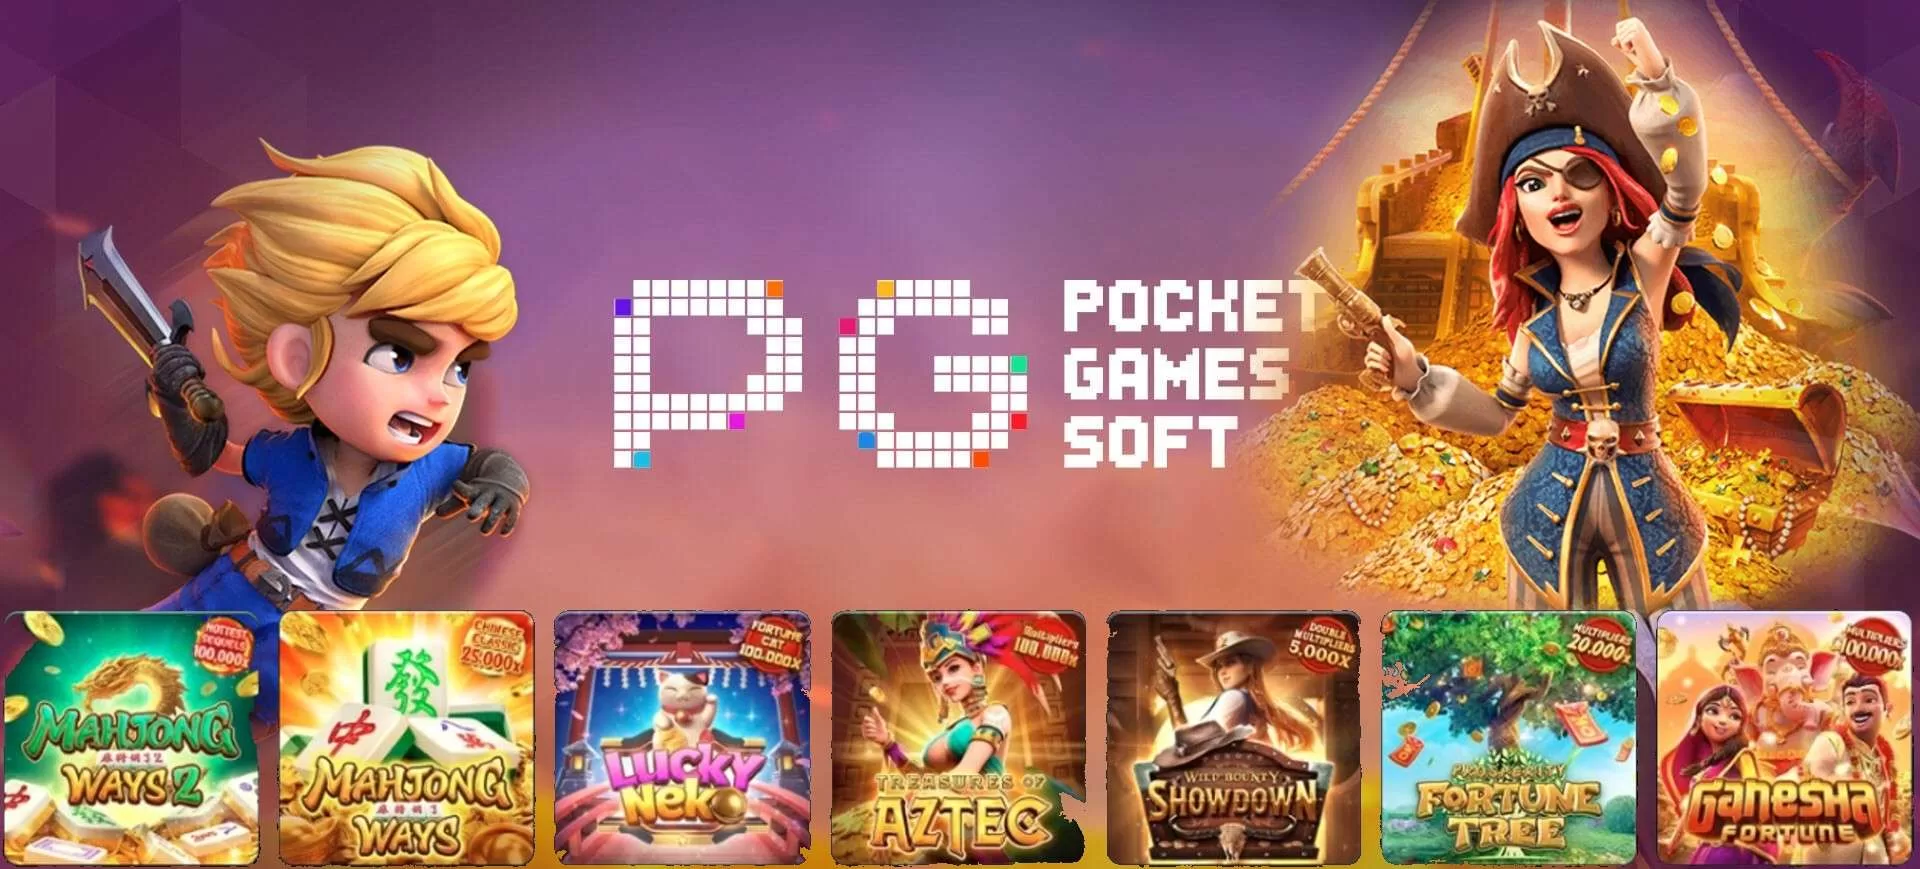 Pocket Game Soft Slot Online Demo Full Version